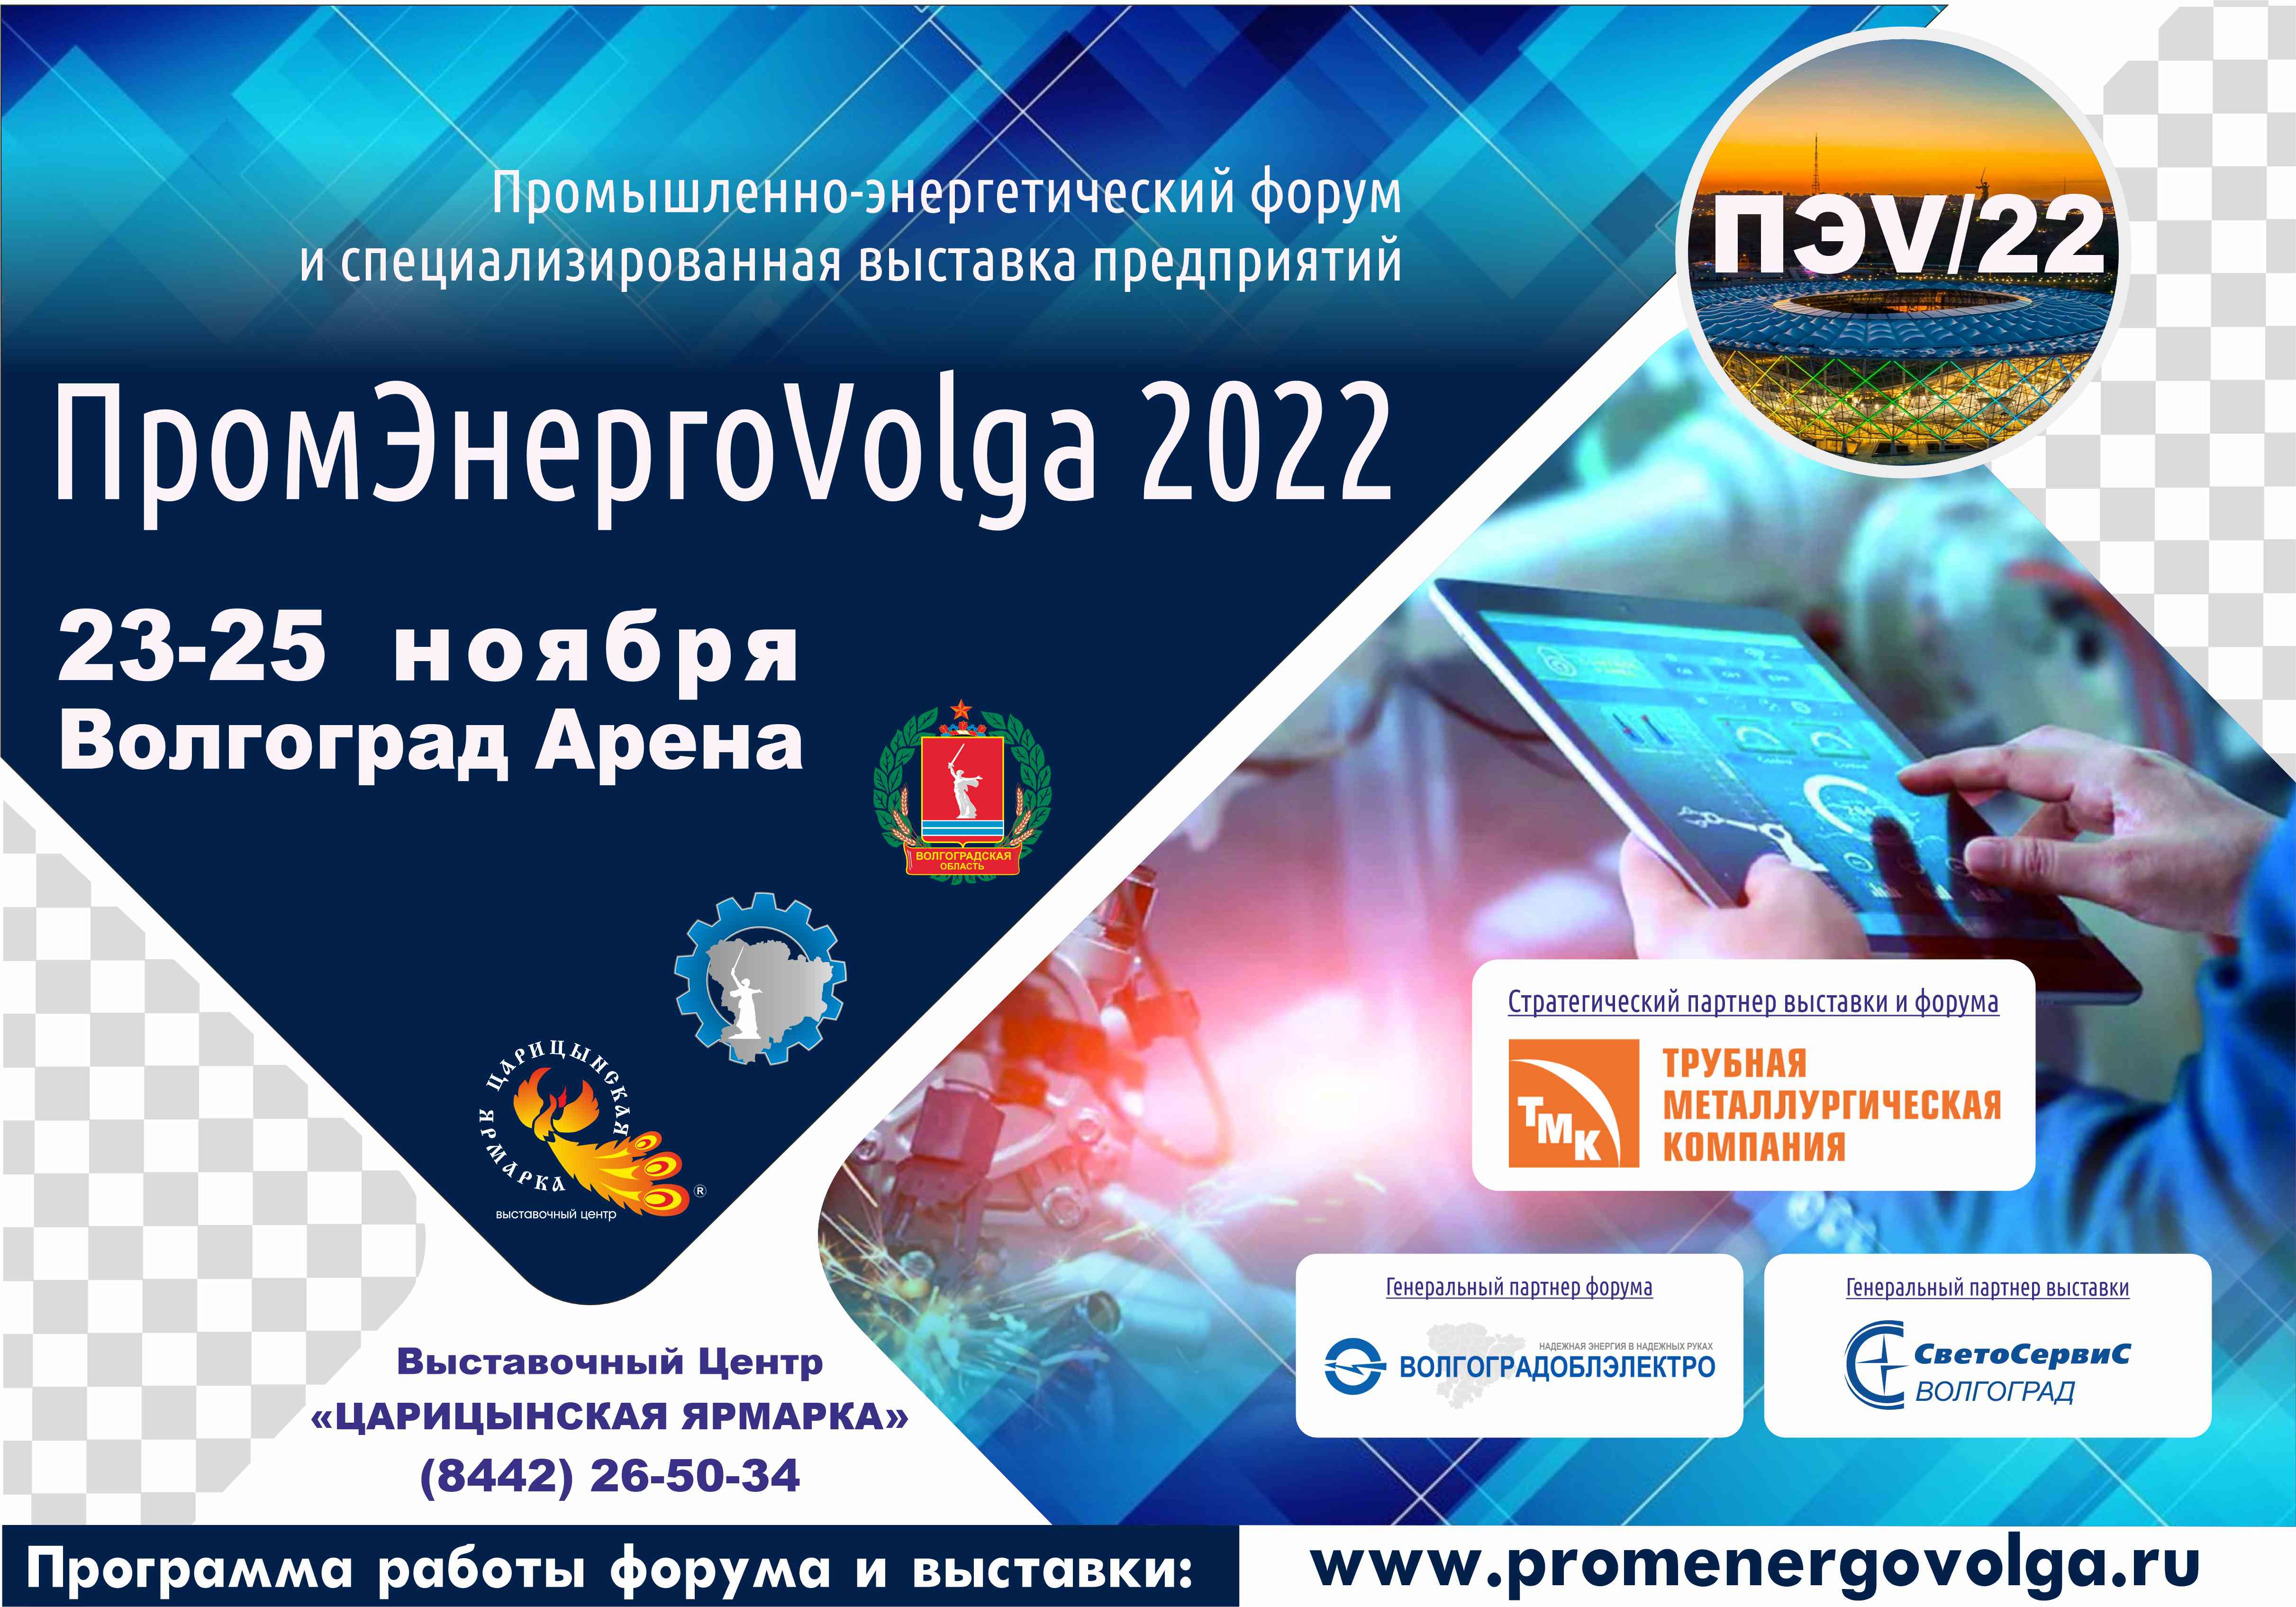 Промышленно-энергетический форум и выставка предприятий  «ПРОМ-ЭНЕРГО-VOLGA’2022».